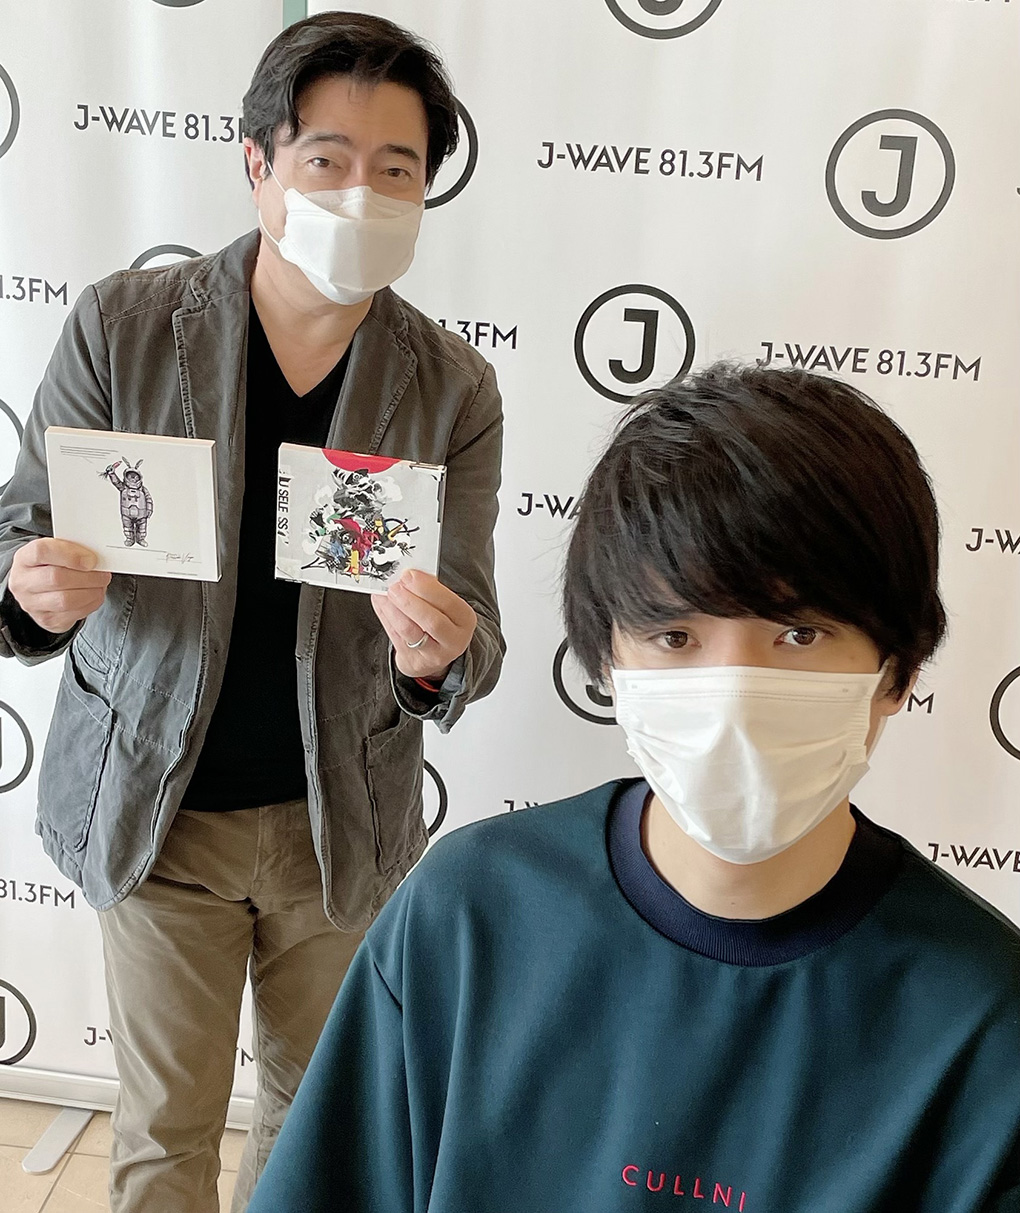 UNISON SQUARE GARDEN、XIIX 斎藤宏介 – J-WAVE 81.3 FM JK RADIO 